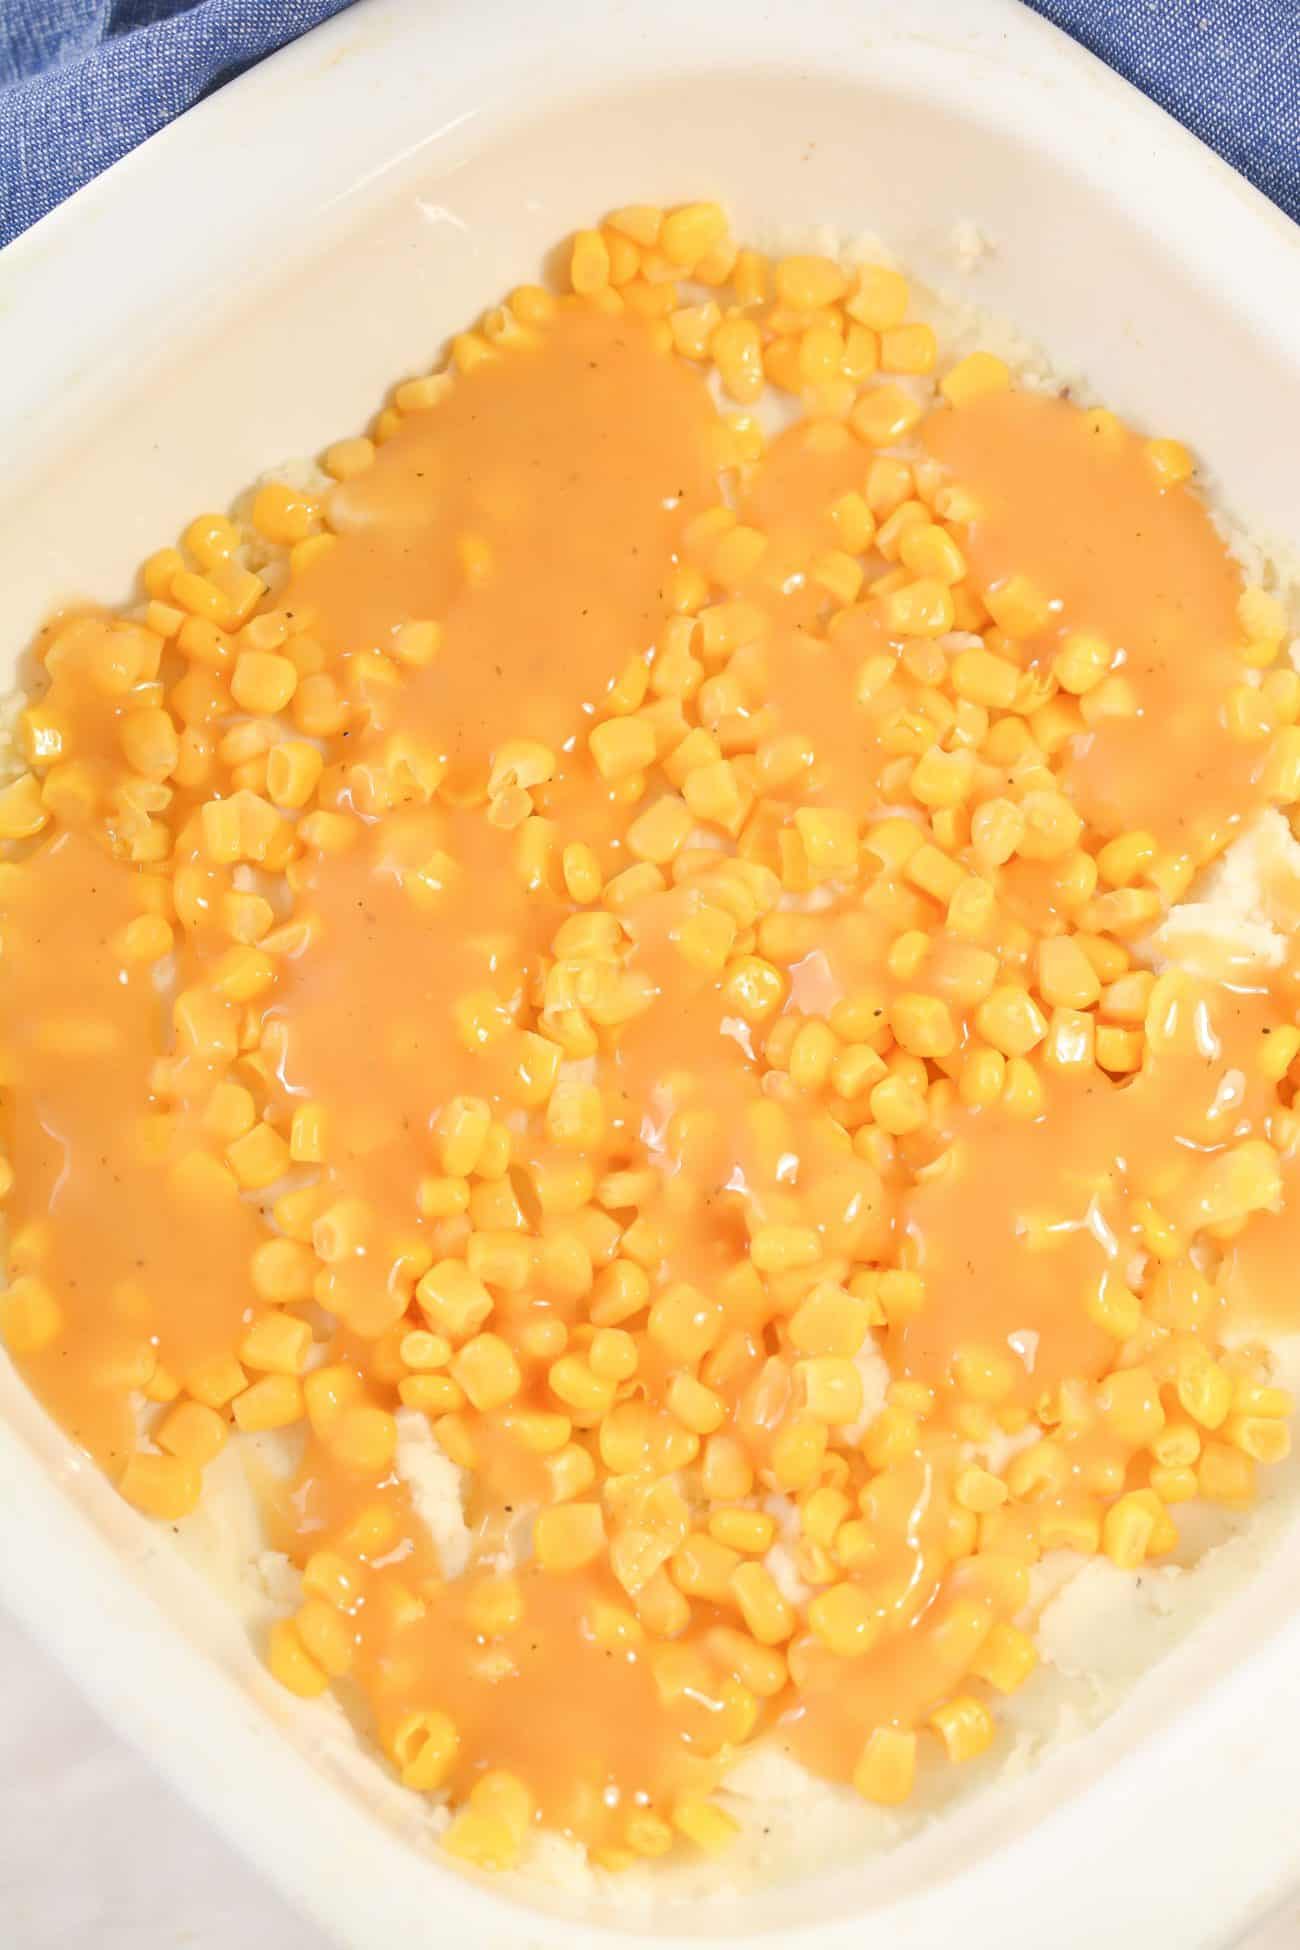 Drizzle the gravy over the corn.